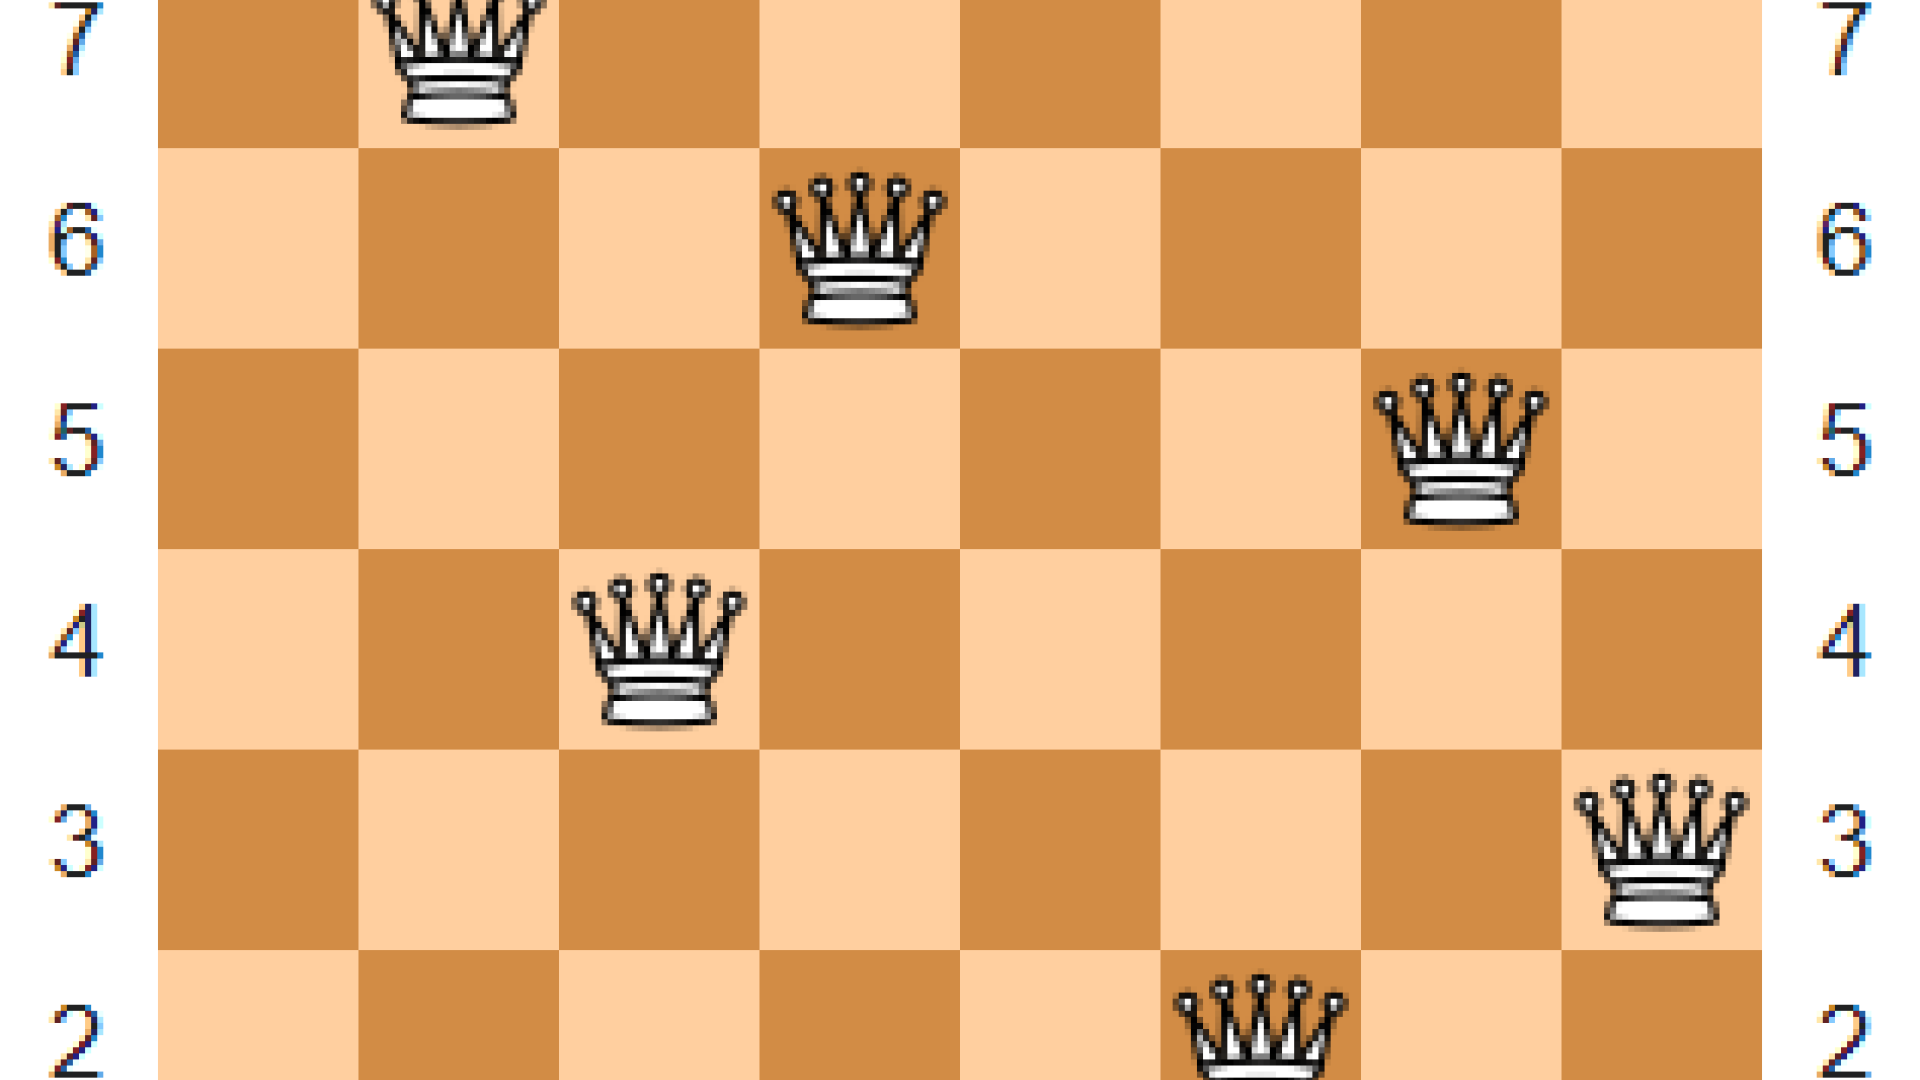 O problemă de șah care i-a uimit pe matematicieni a fost rezolvată după mai de mai bine de 150 de ani